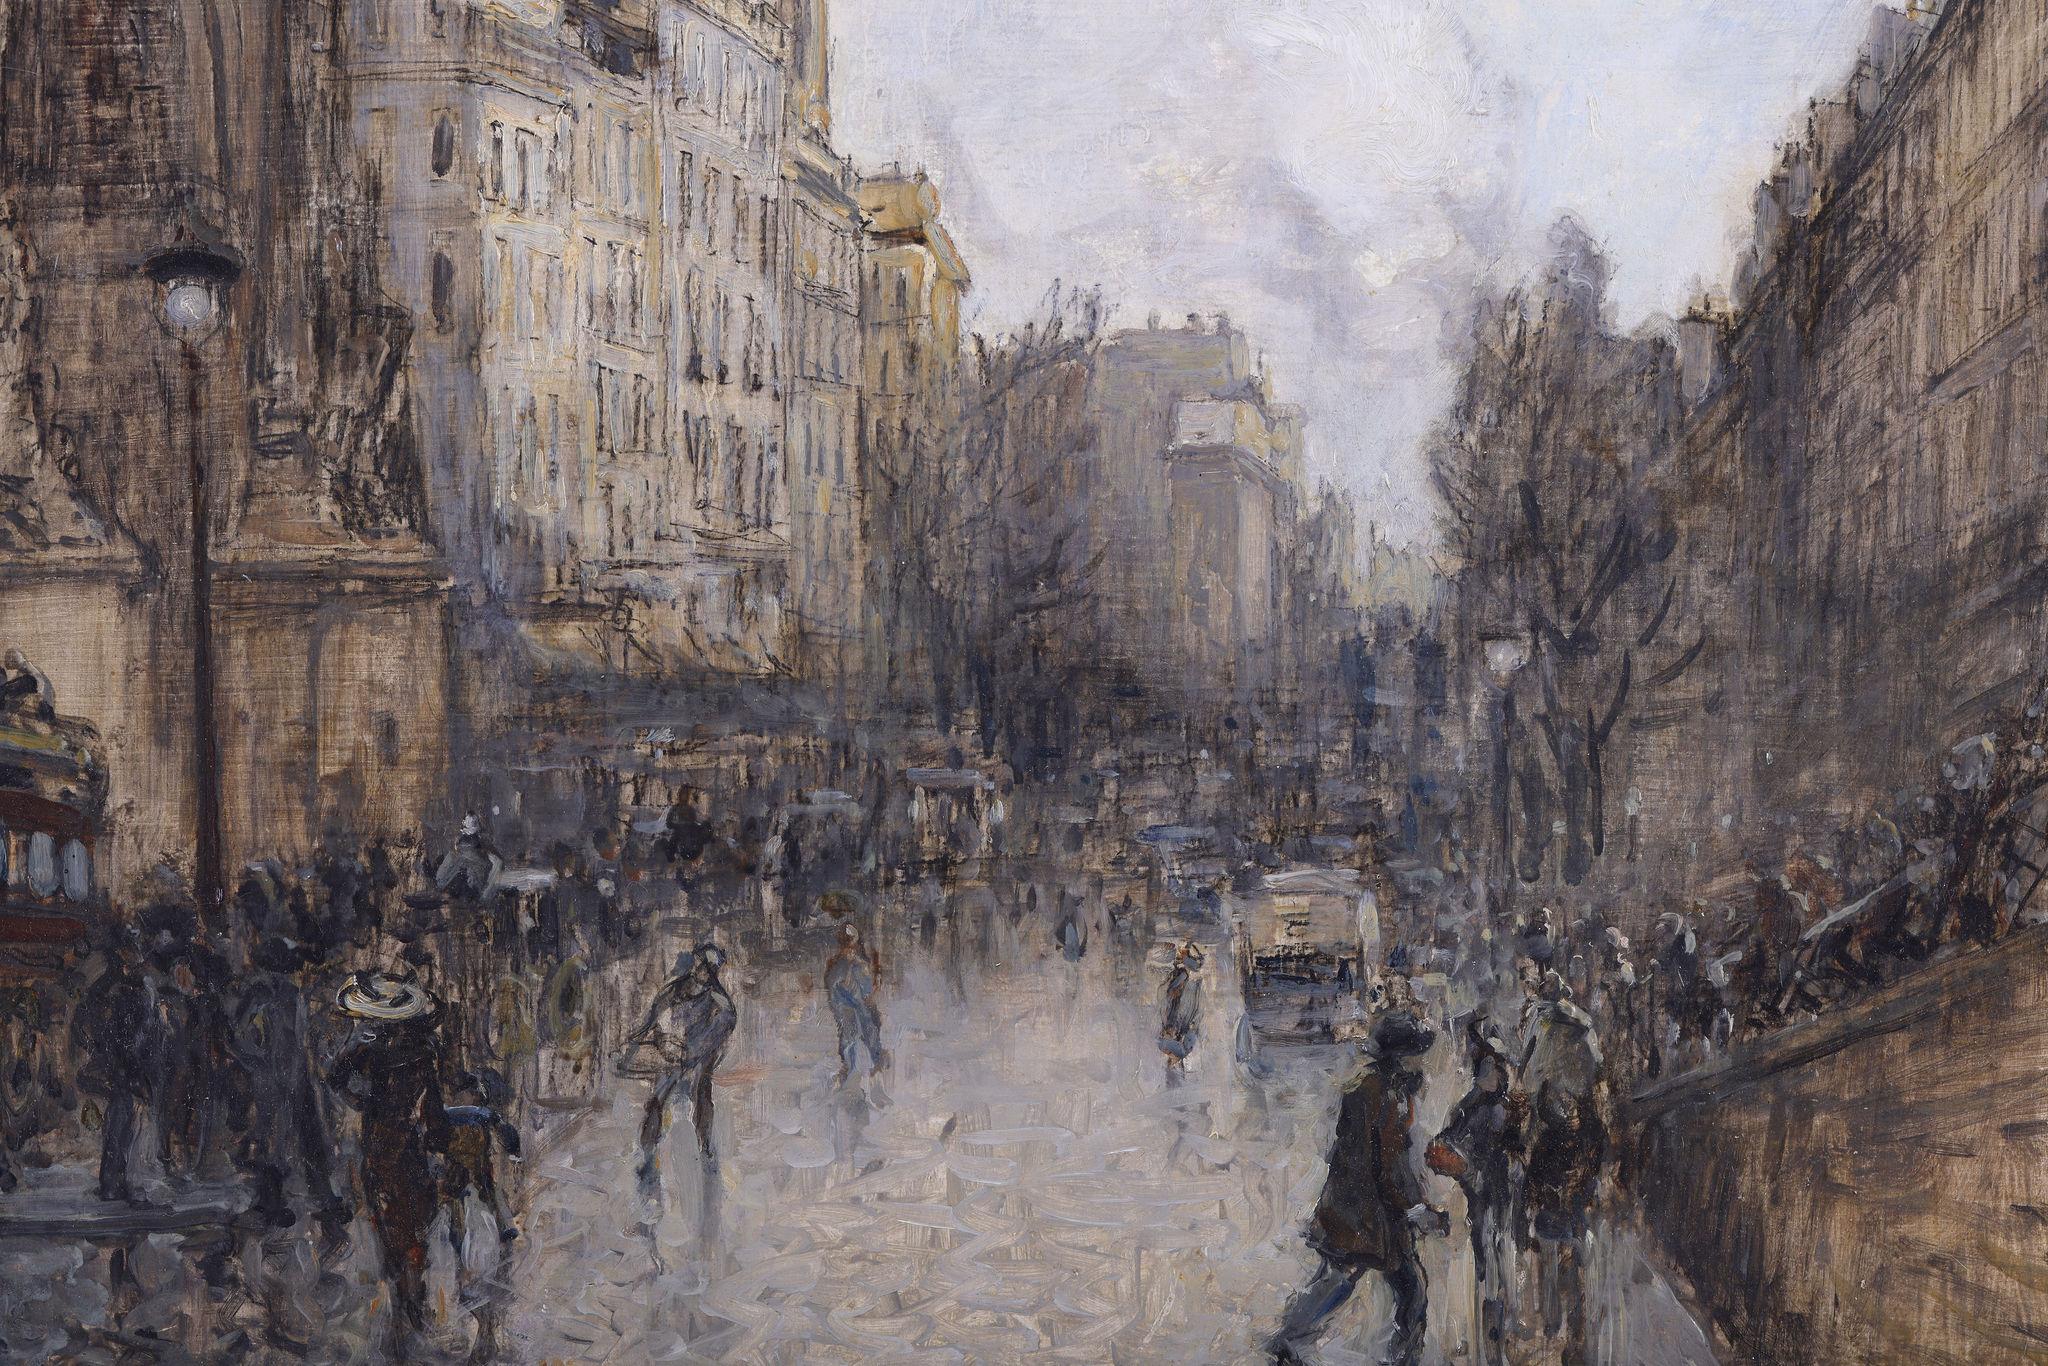 Porte St Denis, Paris - A Parisian Scene - Impressionist Painting by Frank Meyers-Boggs